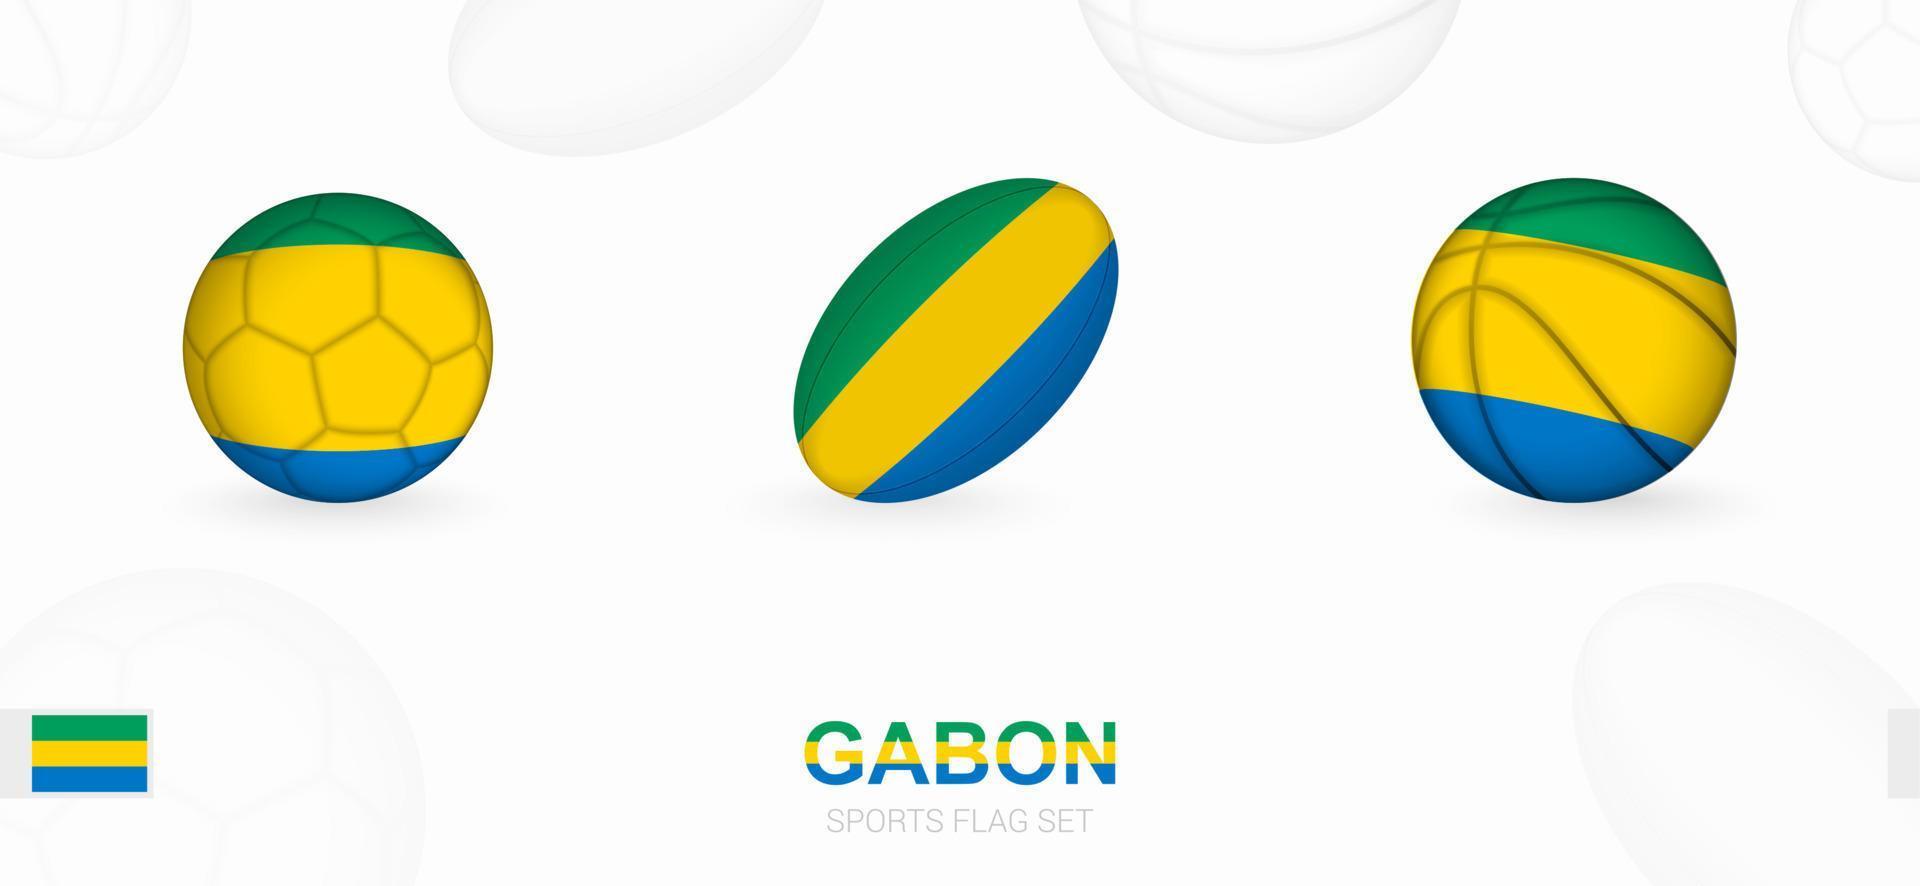 Deportes íconos para fútbol, rugby y baloncesto con el bandera de Gabón. vector